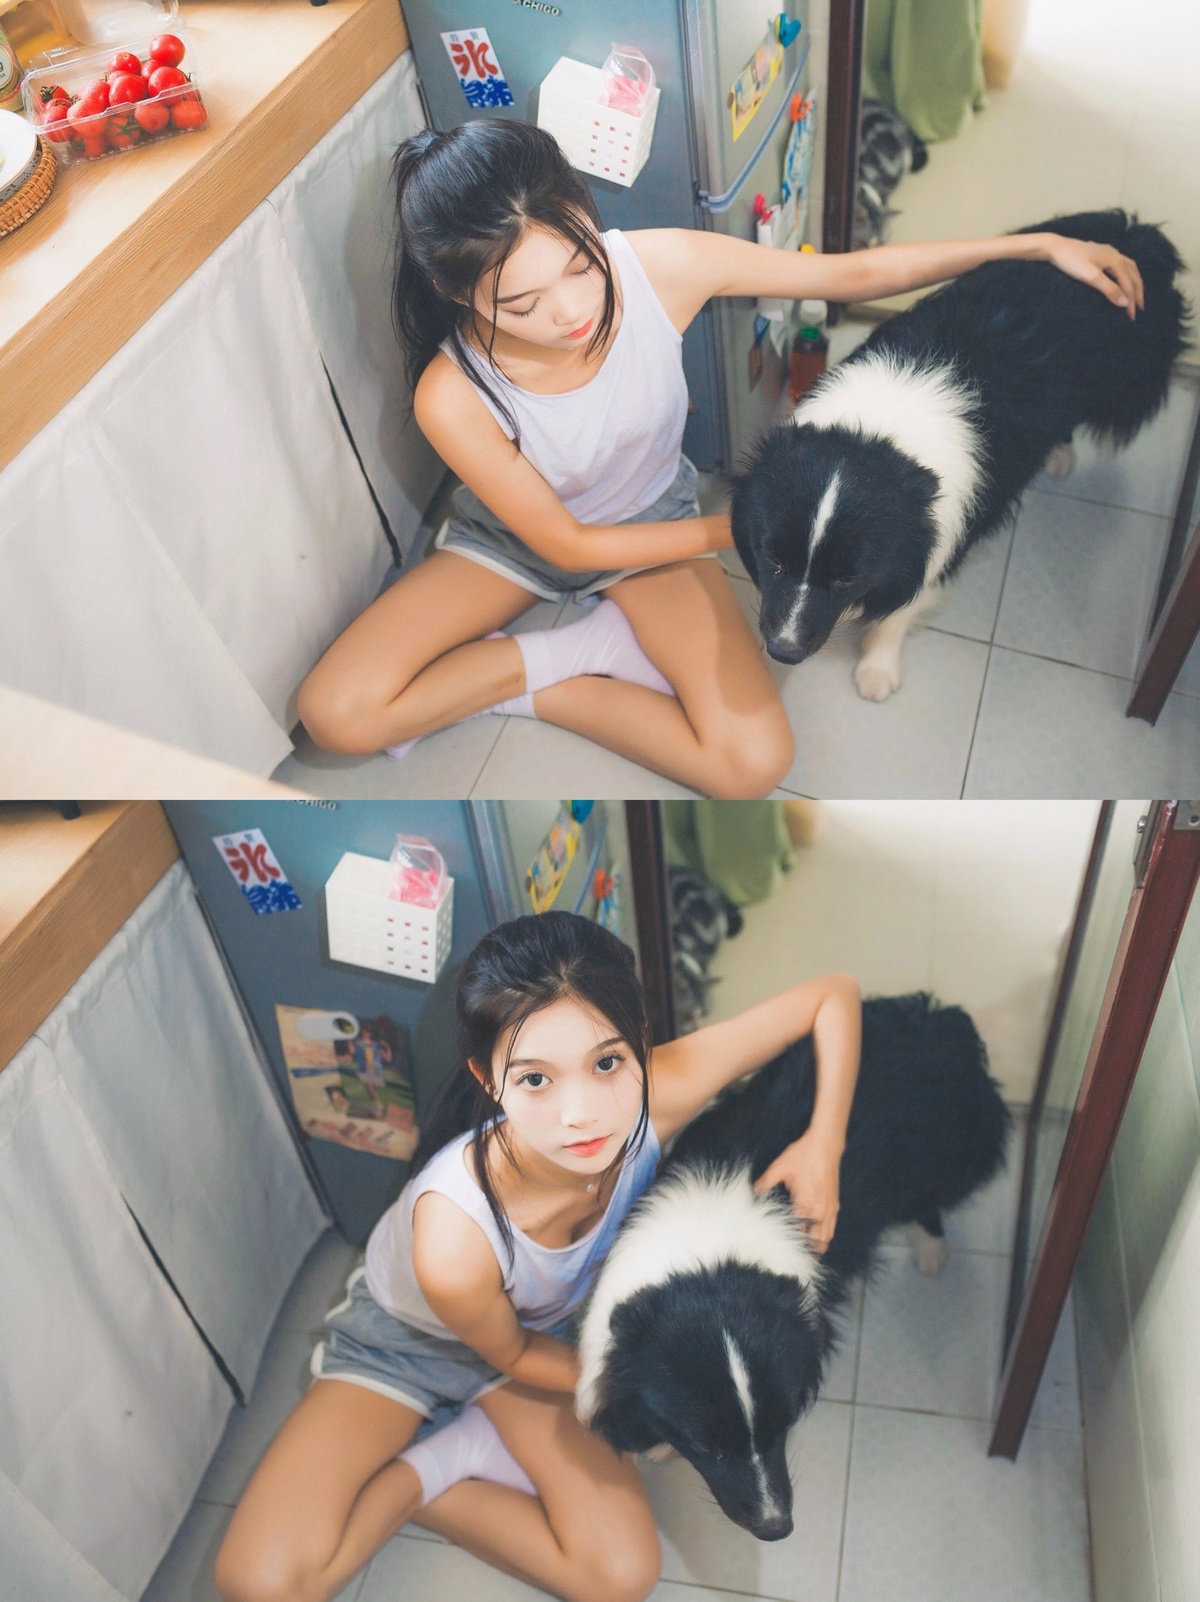 一只黑白相间的狗坐在厨房地板上 旁边是一位年轻女子。